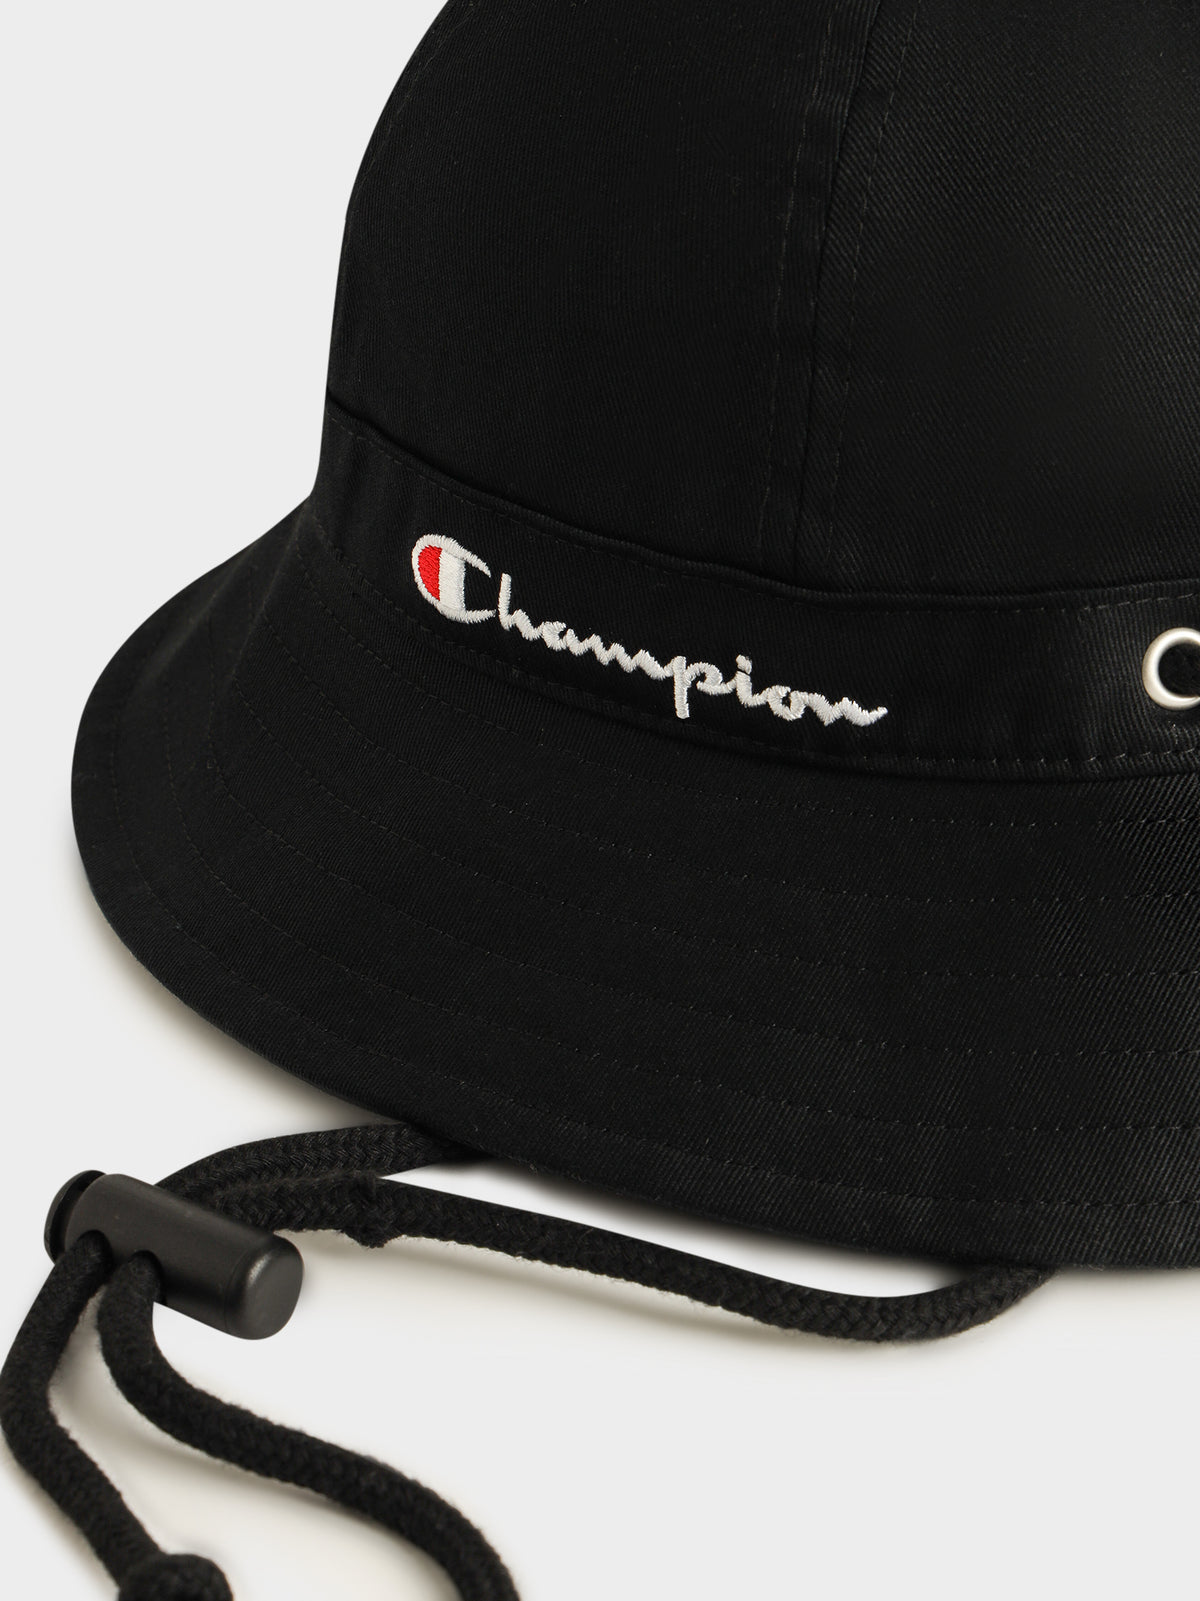 C Life Fisherman Hat in Black